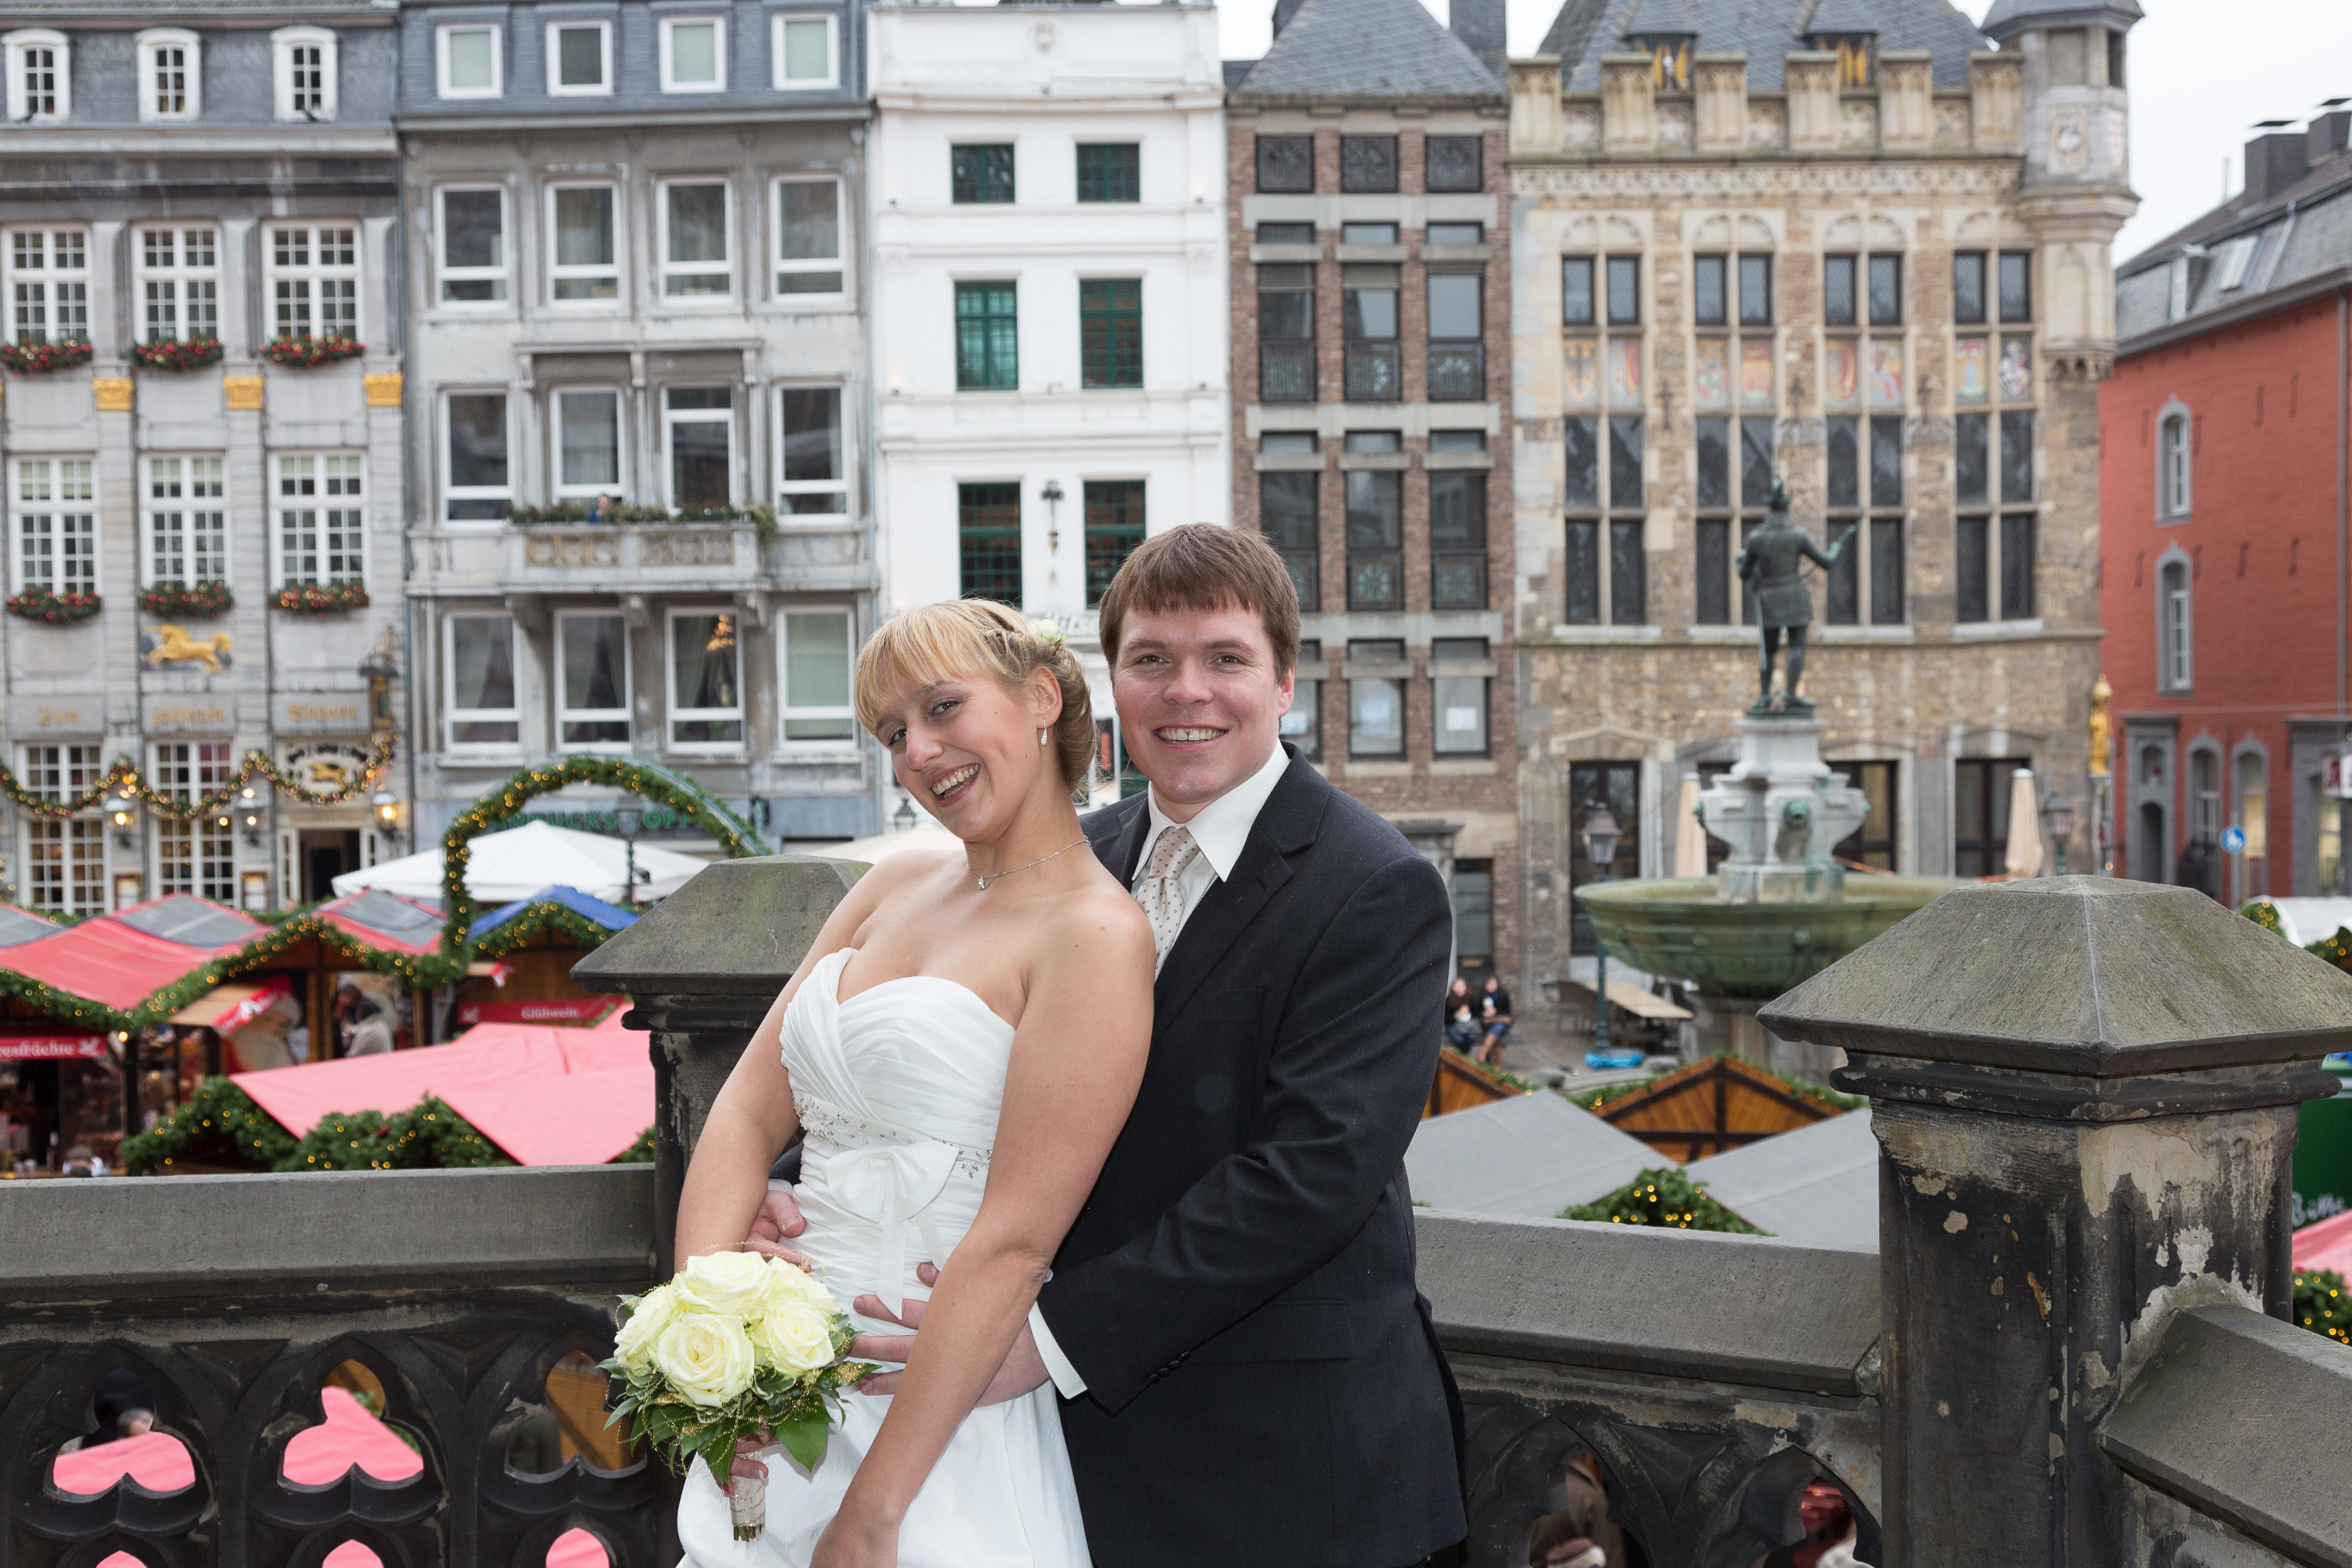 Юлия и Деннис поженились в Ахенской ратуше. Внутри храма работает ЗАГС